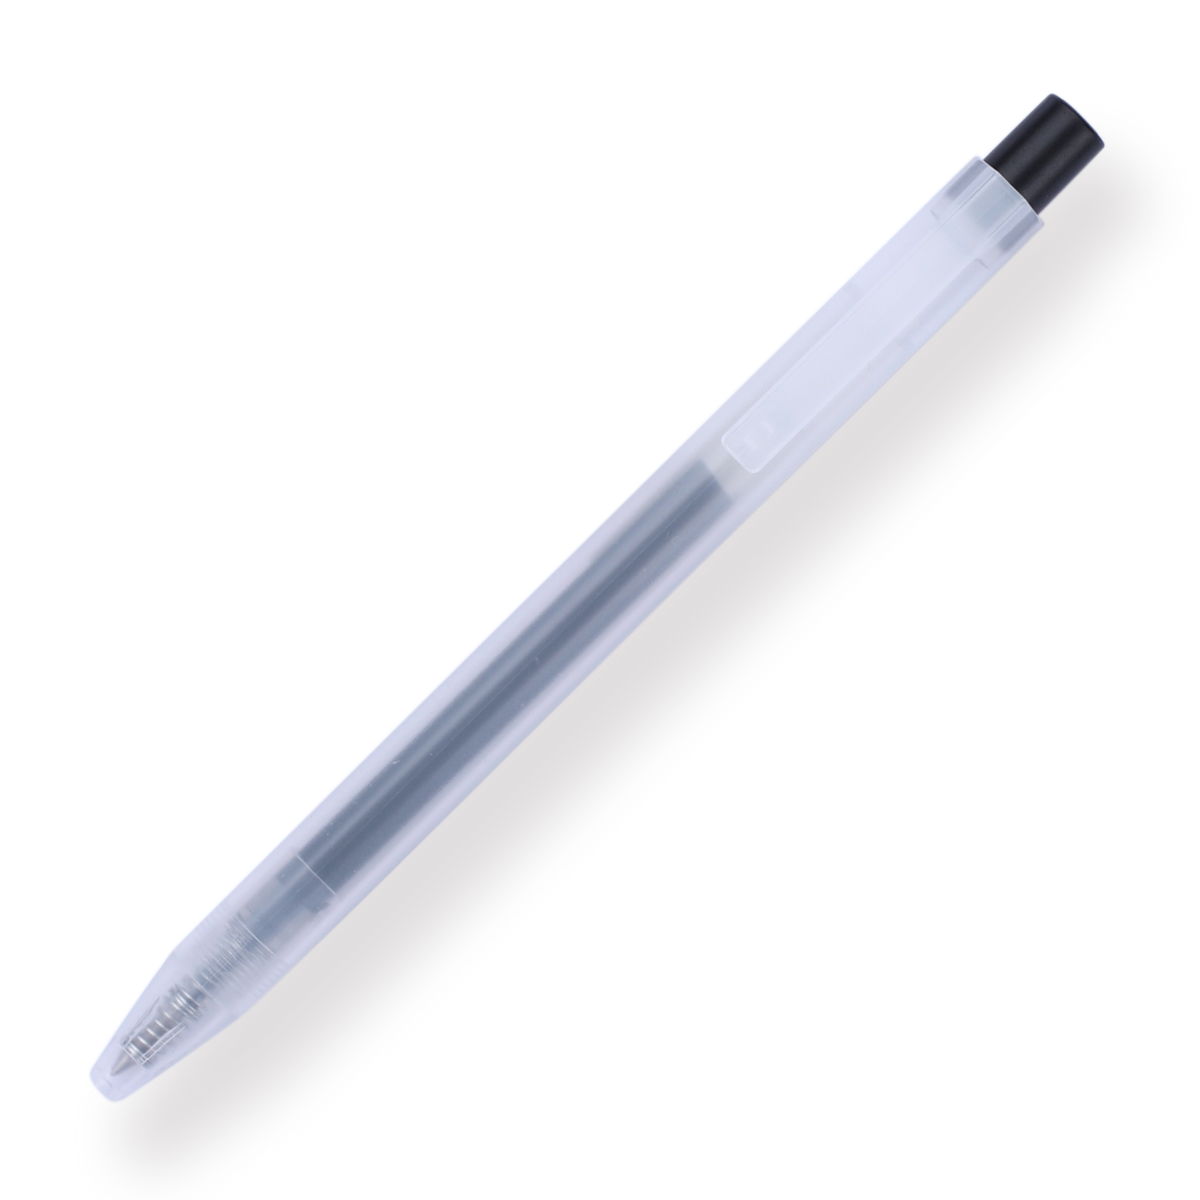 MUJI Gel Ink Ballpoint Pen Cap Type 10 Pieces Set, Black, 0.5 mm Nib Size